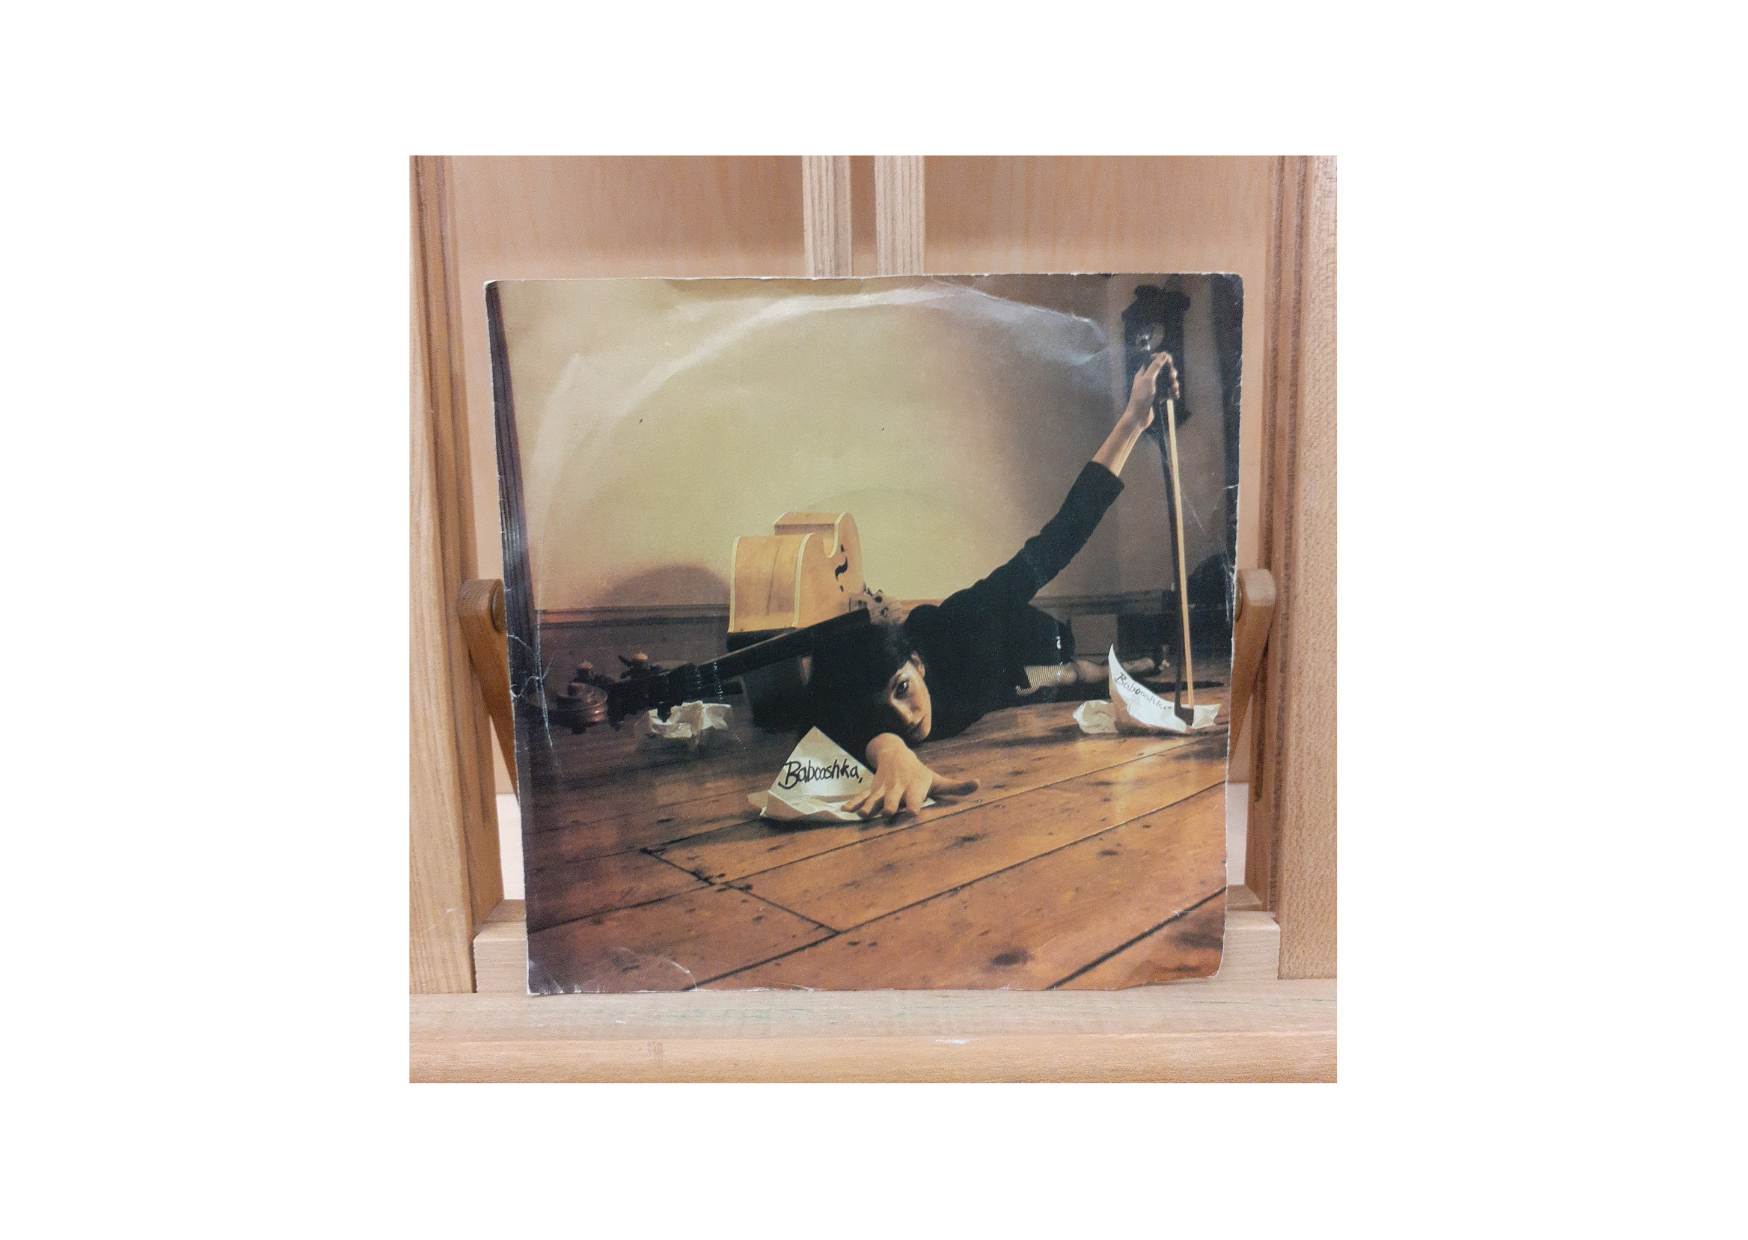 Kate Bush Babooshka Rear View 7" Single